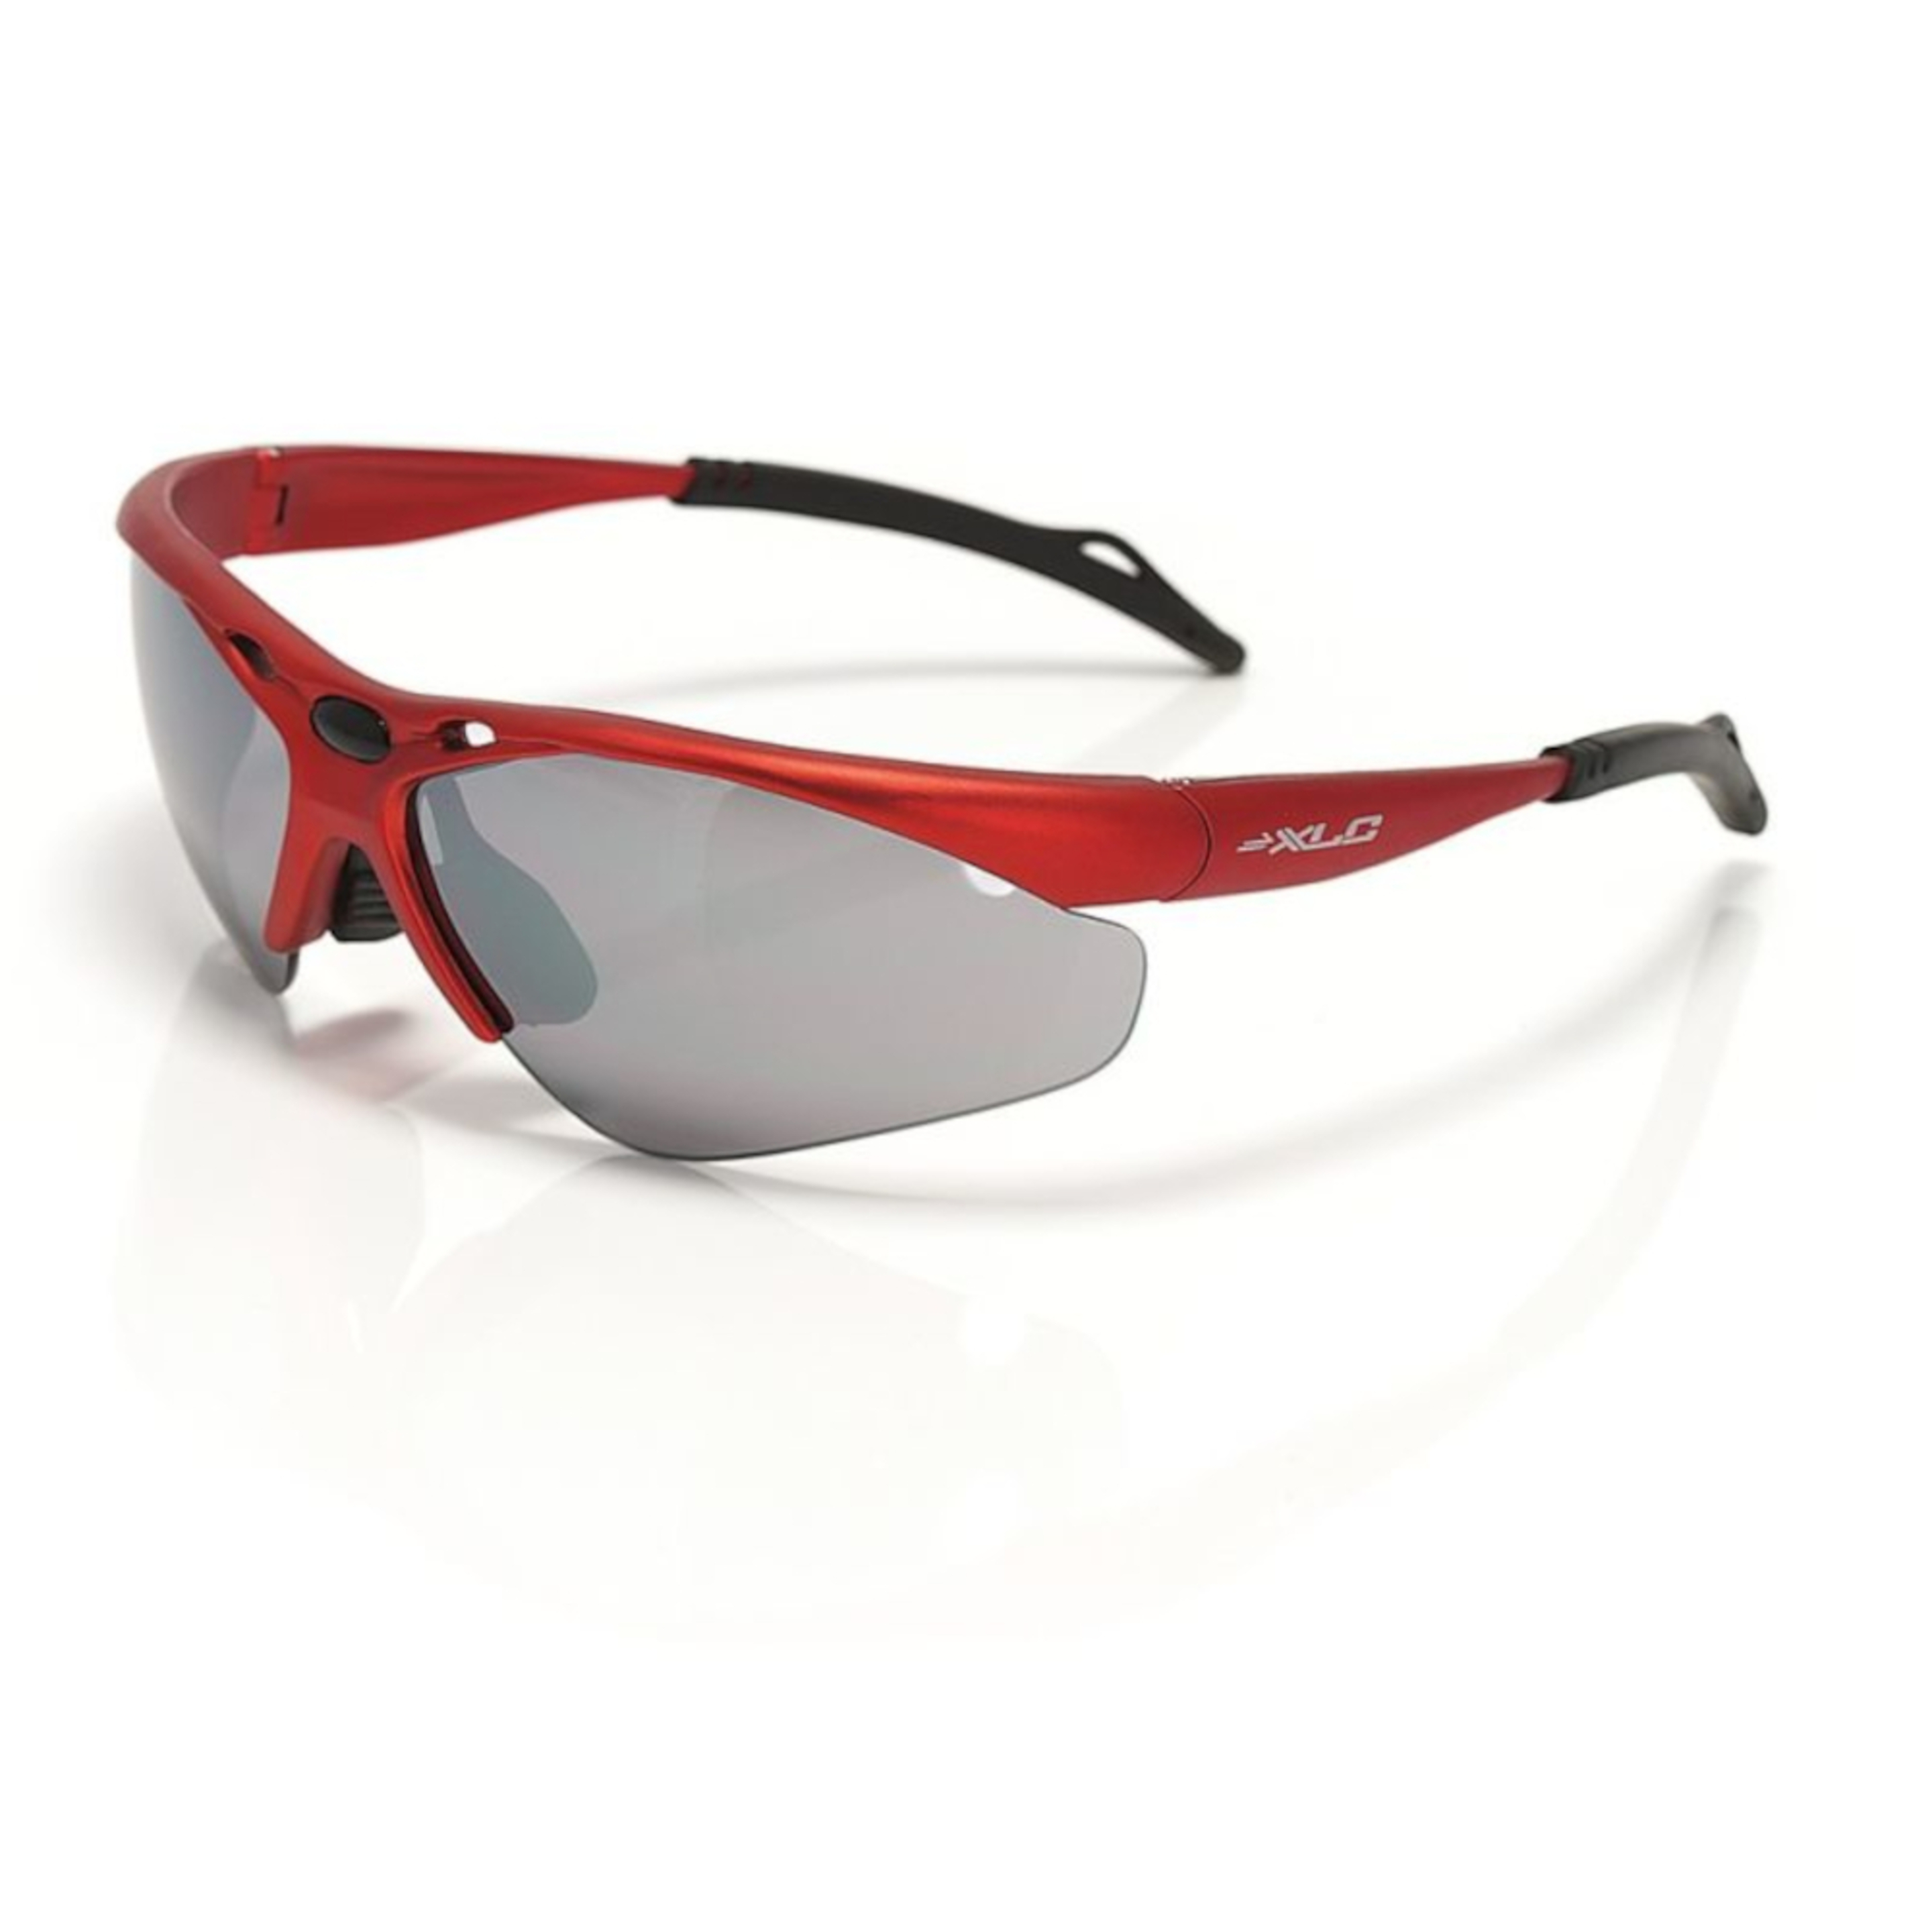 Óculos De Ciclismo Sg-c02 Tahití Xlc - rojo - 